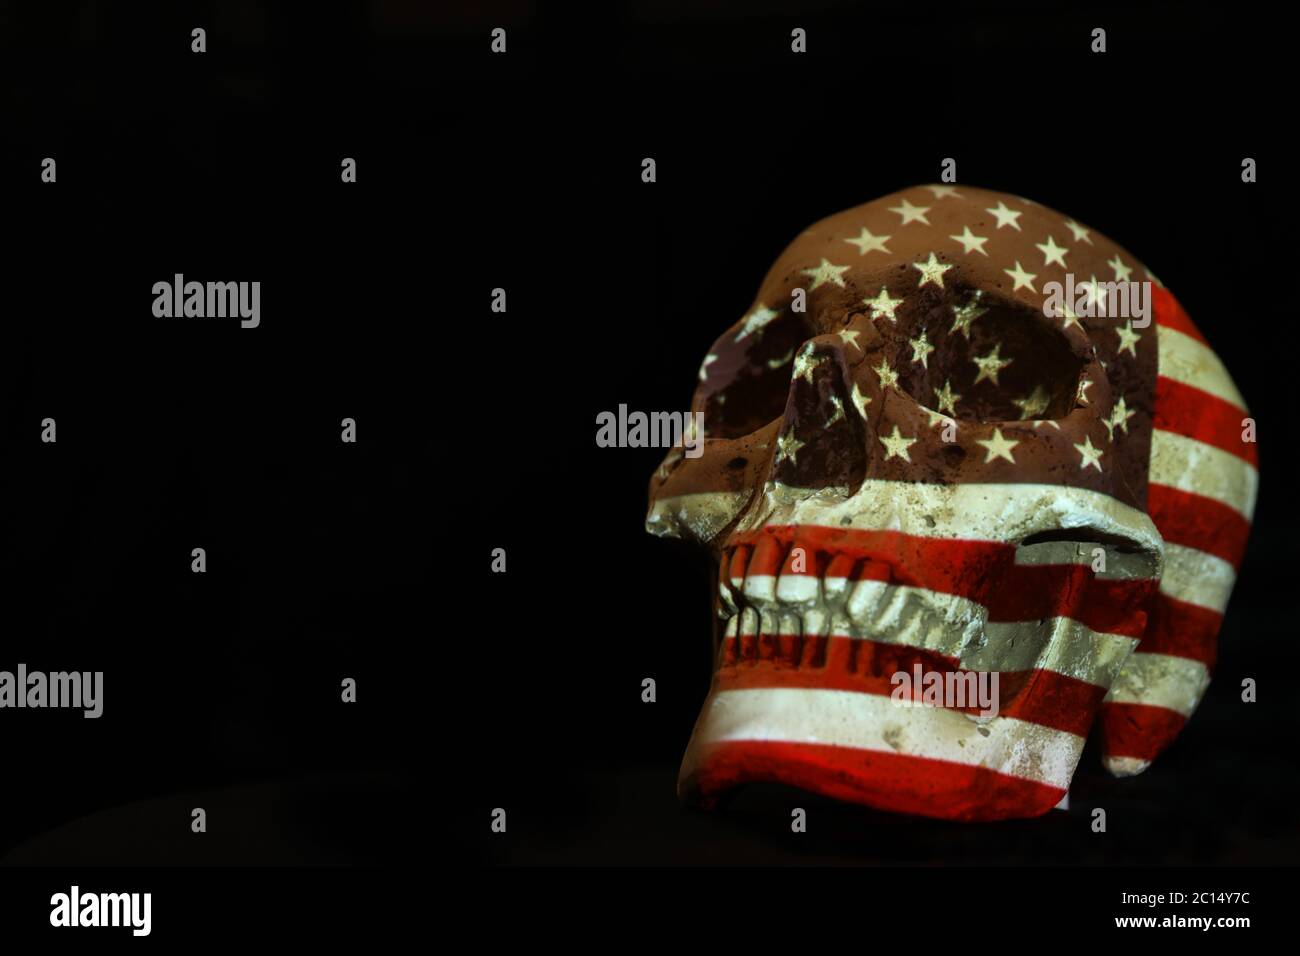 Isolierter weißer Schädel mit der amerikanischen Flagge der Vereinigten Staaten von Amerika, die darüber projiziert wird. Schlichter schwarzer Hintergrund. Covid-19 Corona-Virus oder Pistole Kontrolle Stockfoto